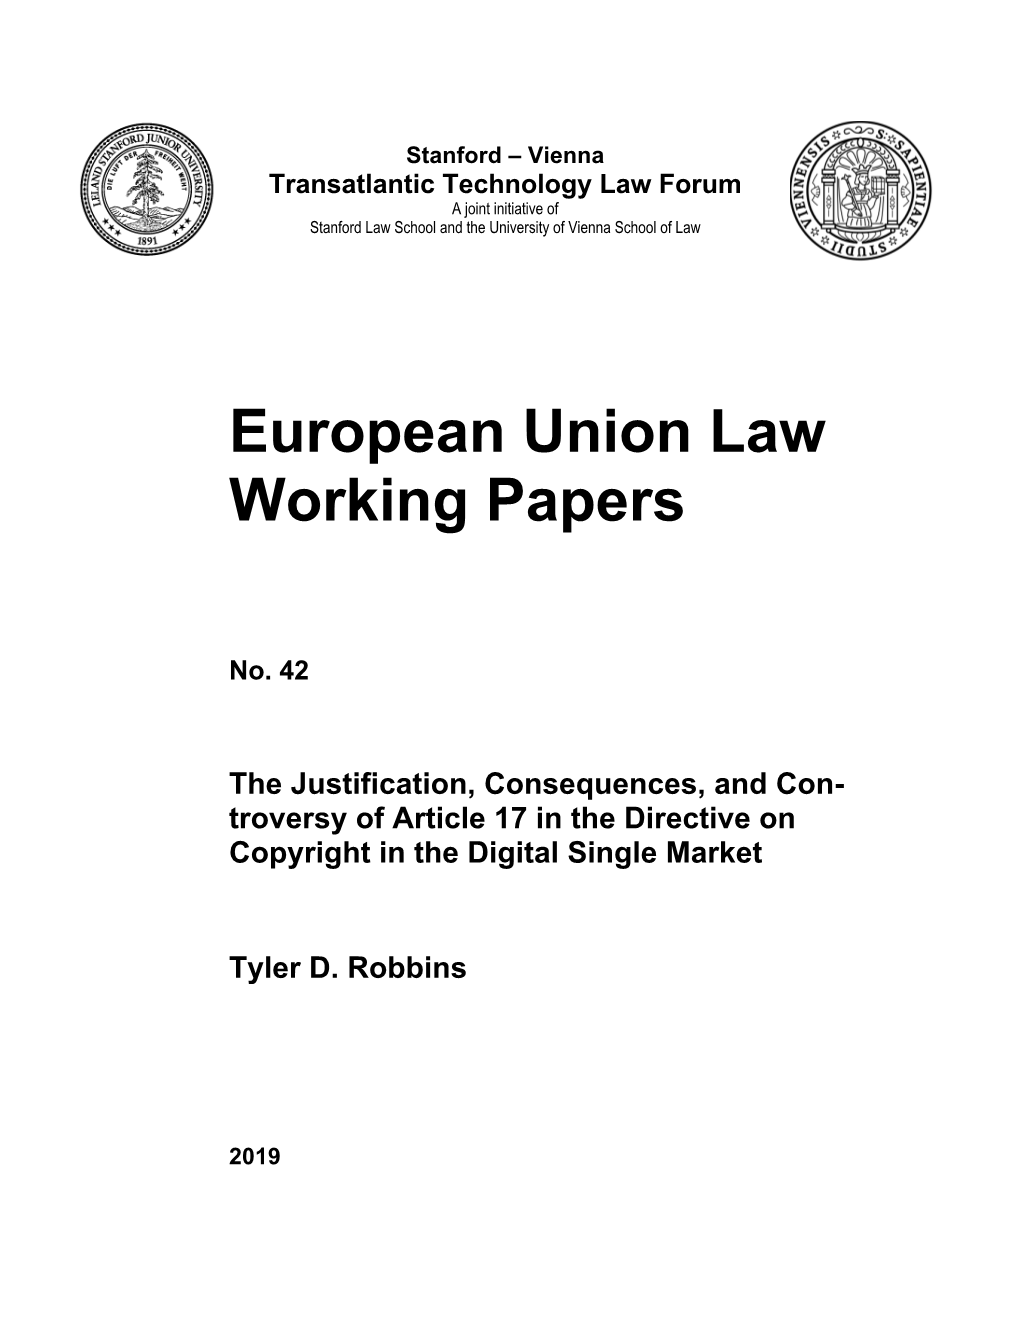 EU Law WP 42 Robbins Cover+Paper